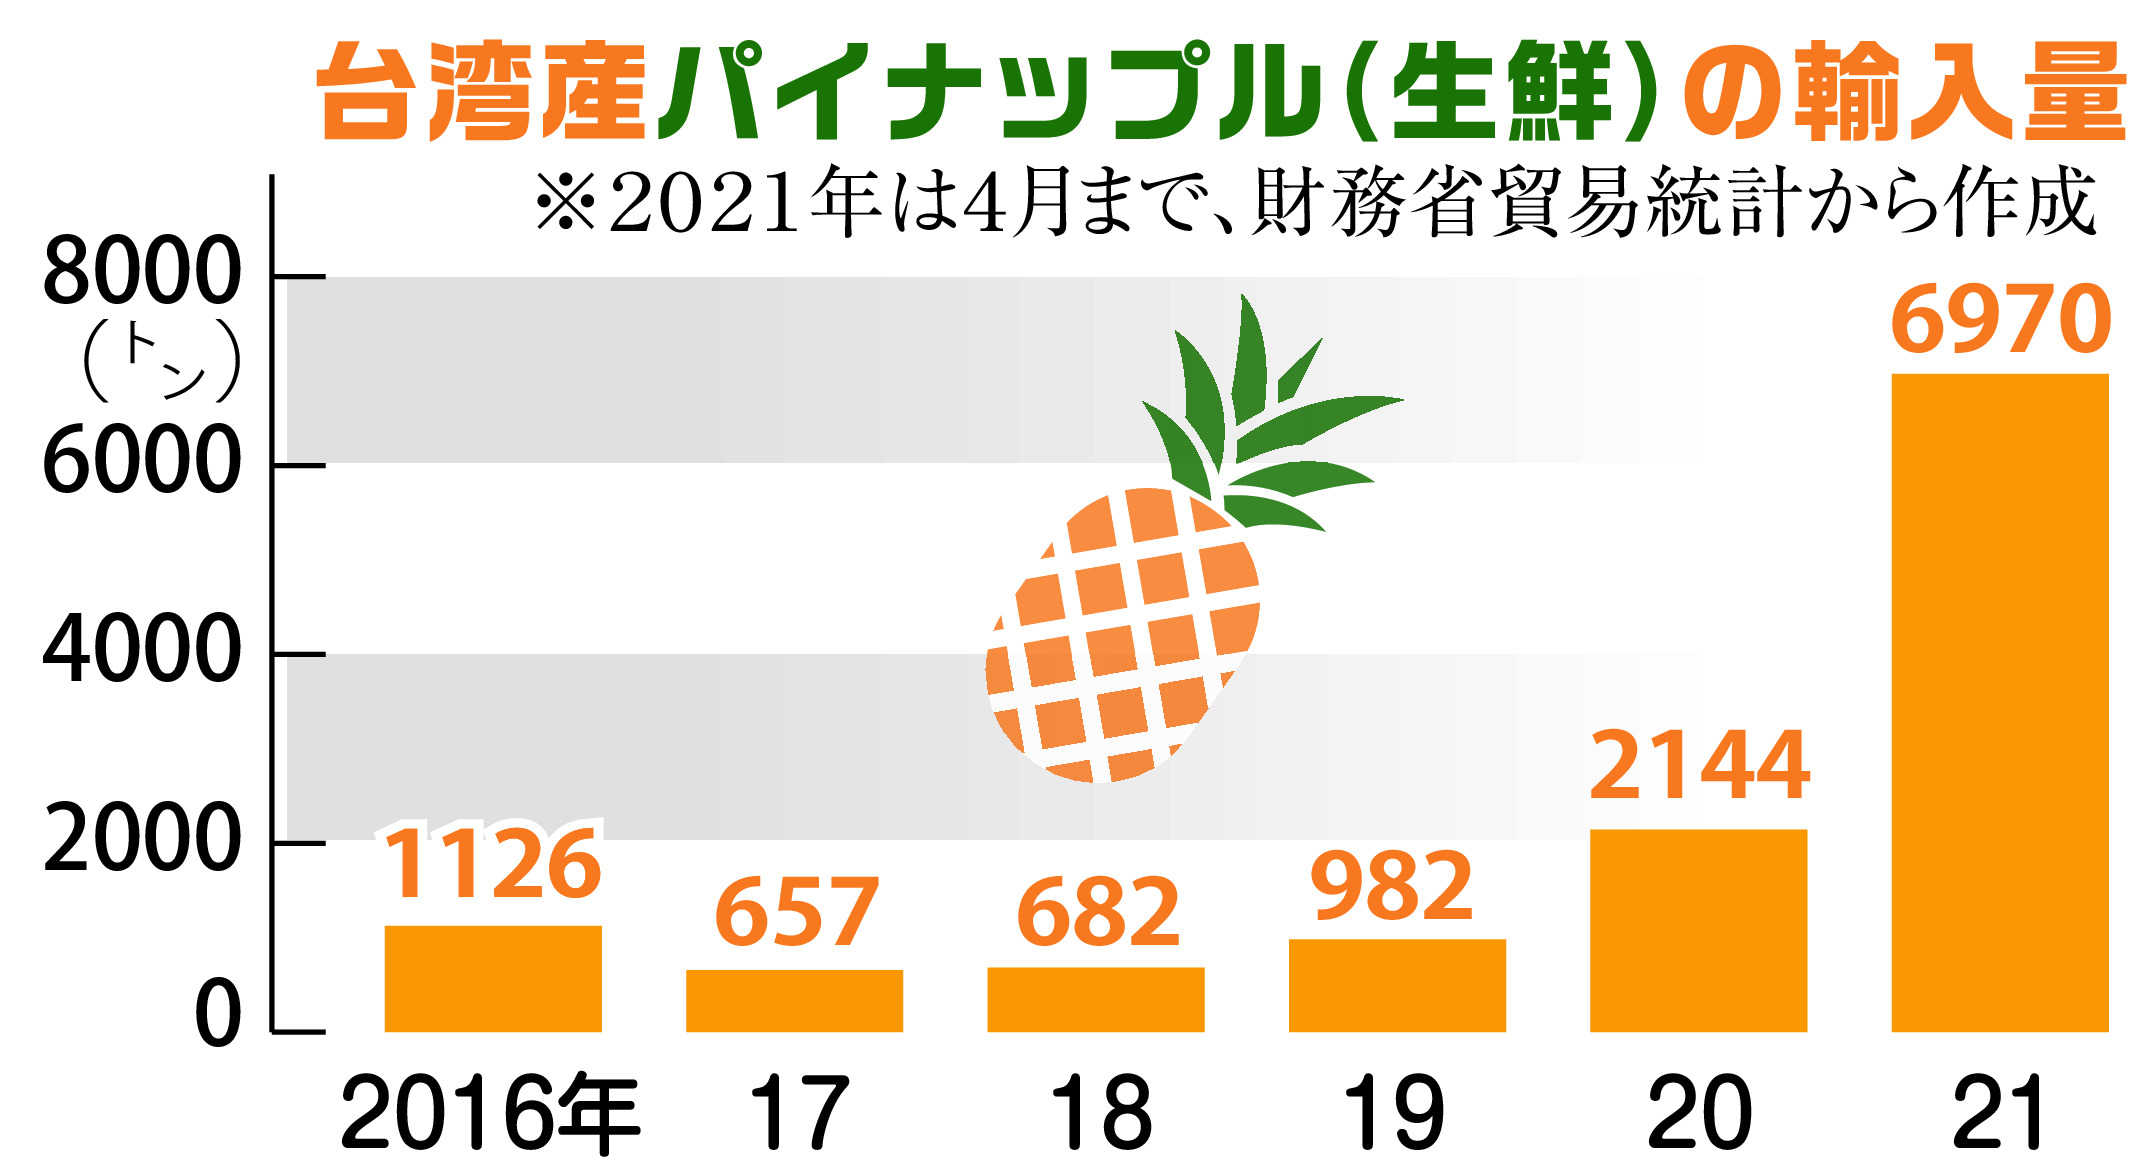 日本人が基盤築いた台湾パイナップル ケーキ輸入で支援を 産経ニュース